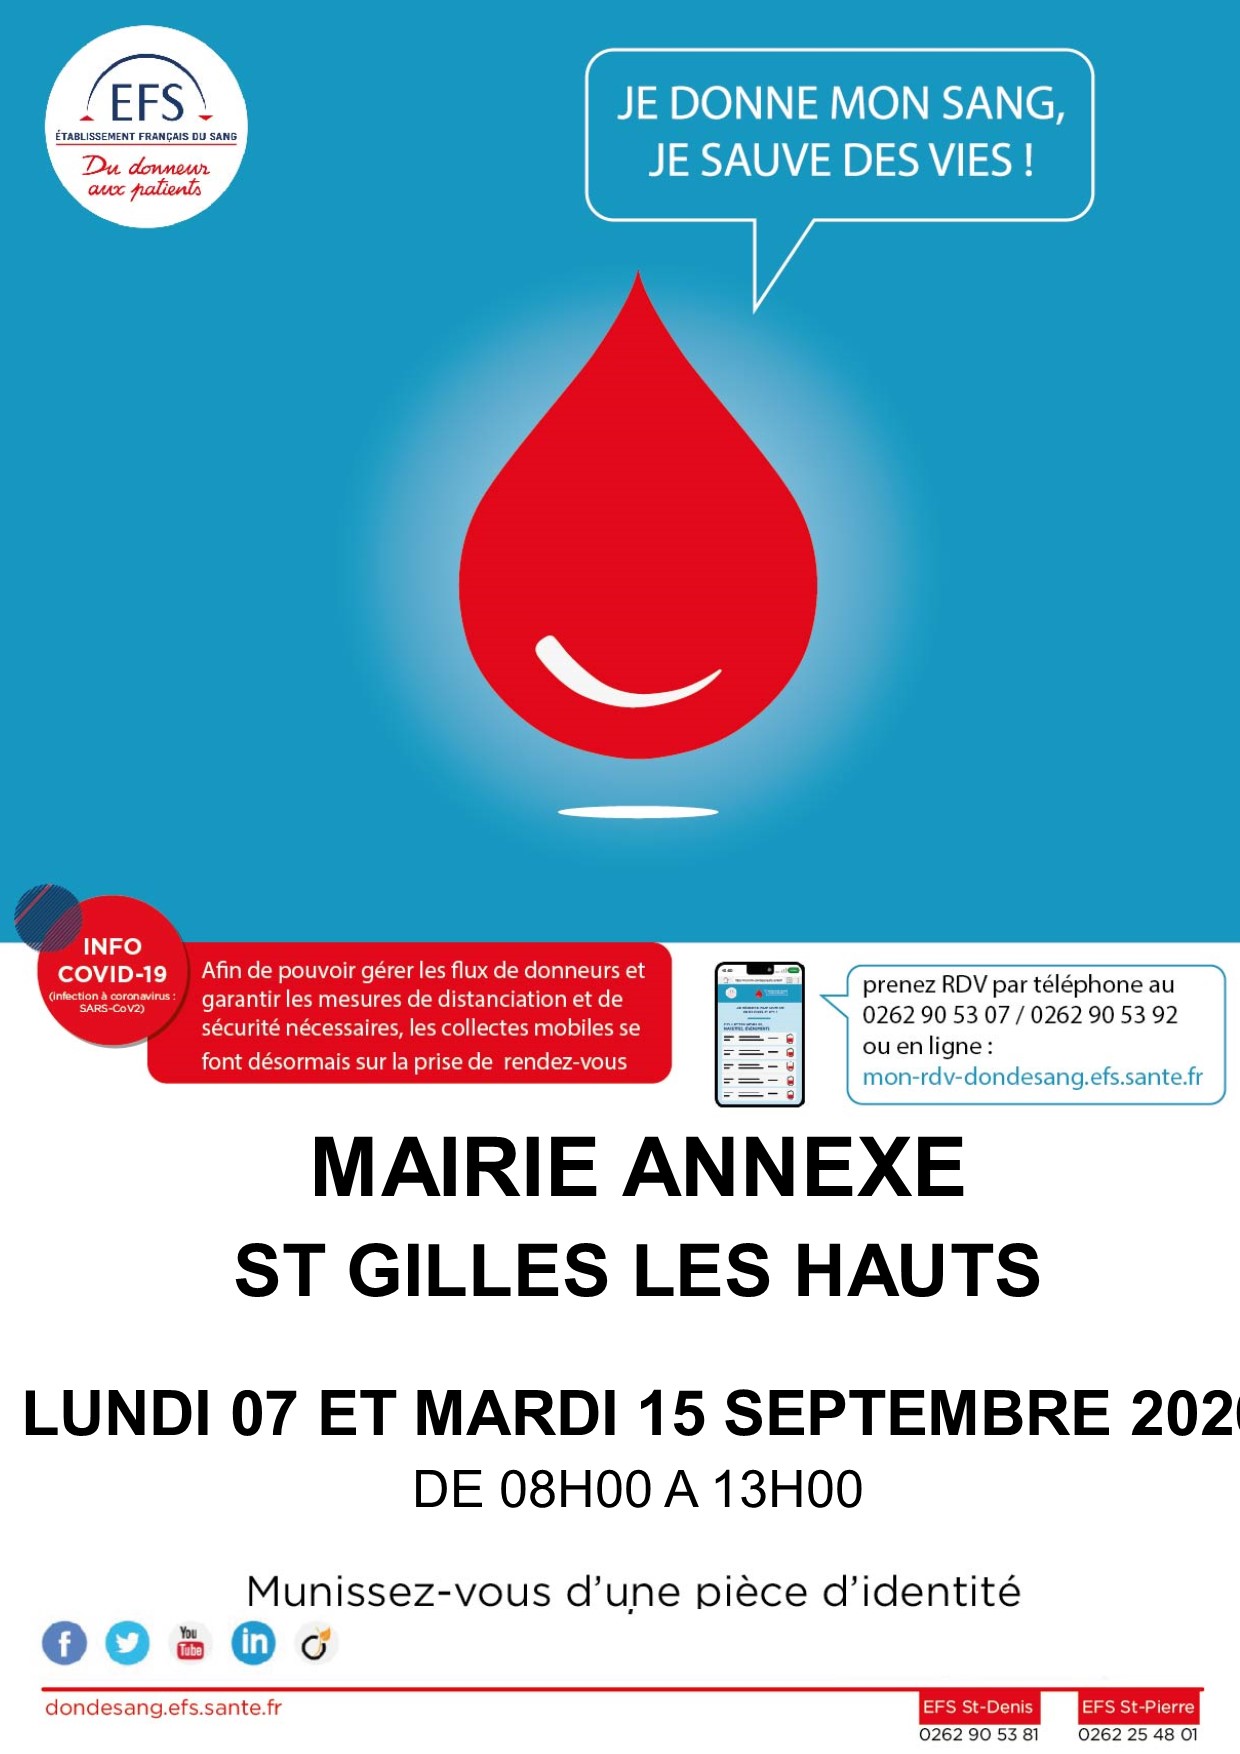 Des collectes de sang à la mairie annexe de Saint-Gilles-les-Hauts en septembre